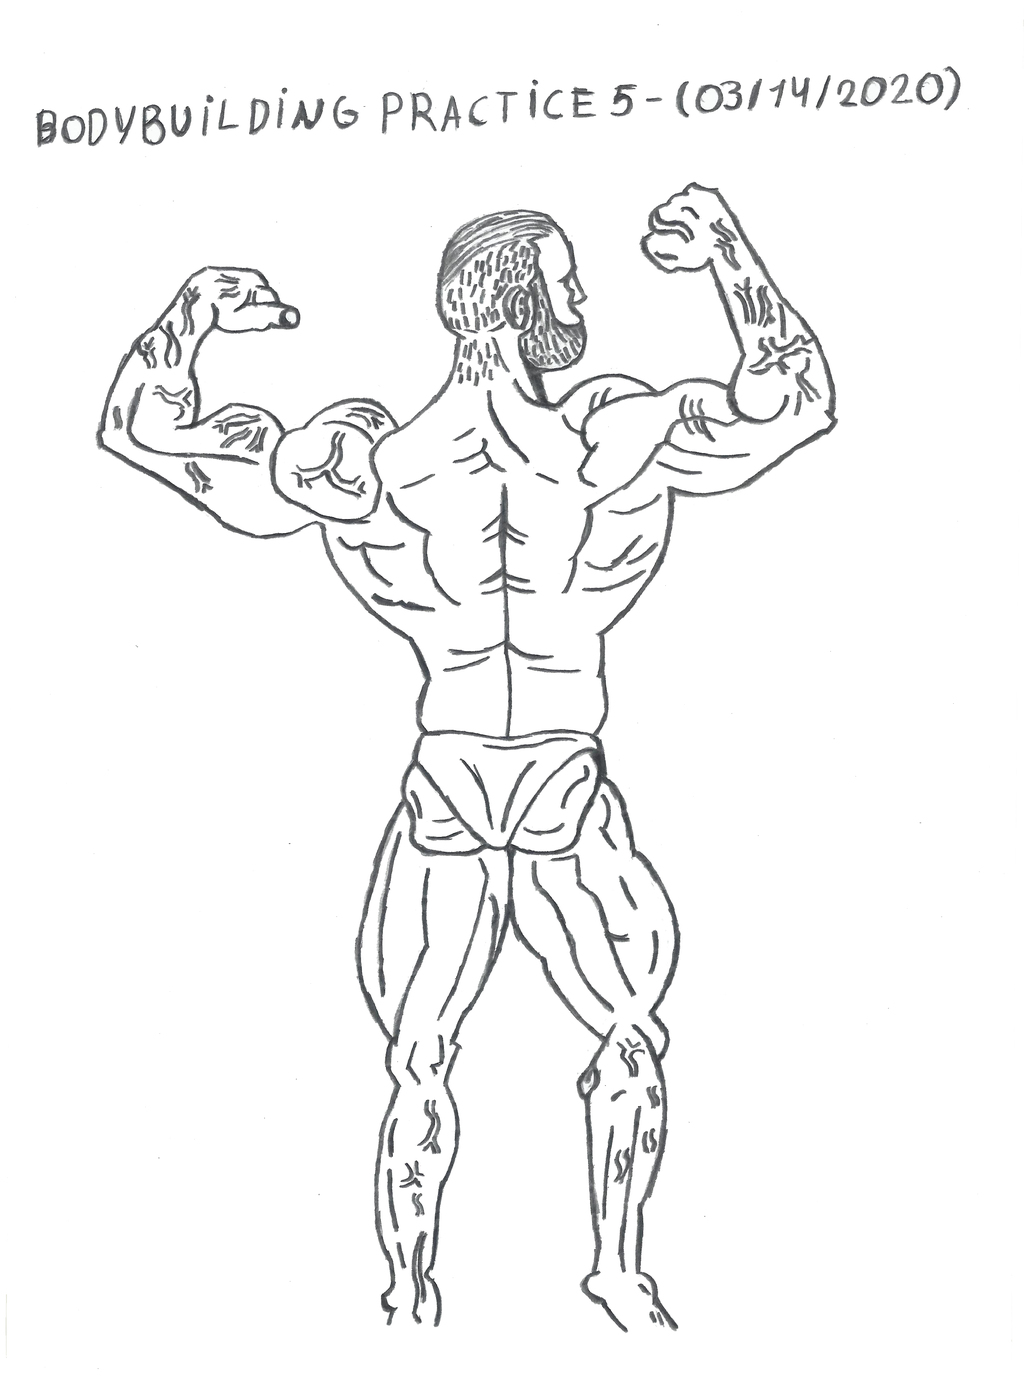 Bodybuilding - Anatomy Practice 5